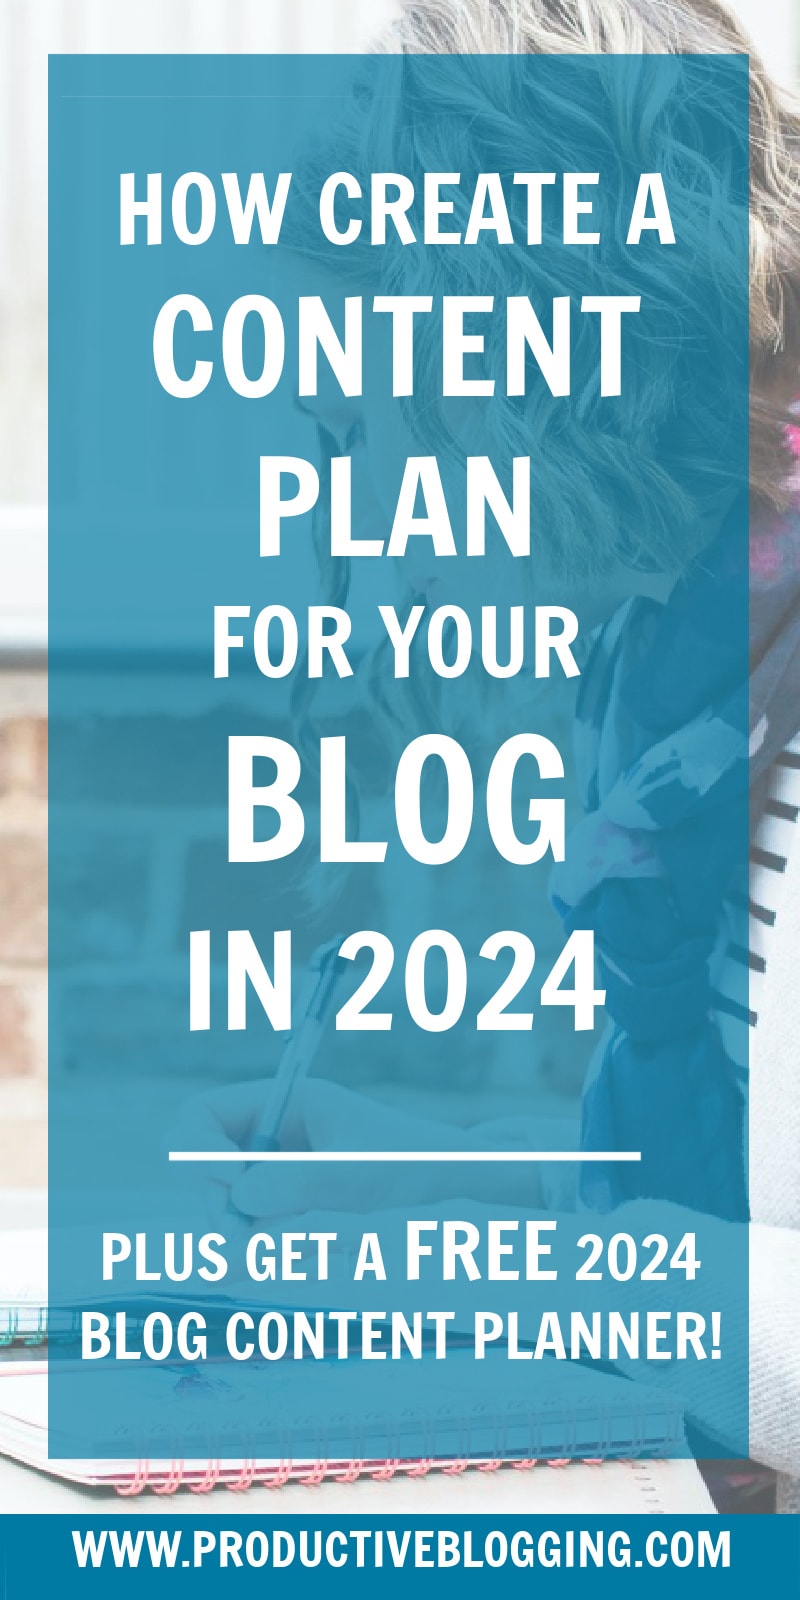 Free 2024 Blog Content Planner #goals #dreams #2024goals #goalsetting #goalsetting2024 #2024dreams #newyear #newyears2024 #newyearplanning #newyeargoals #2024planning #2024planner #2024plans #blogginggoals #bloggingdreams #blogplanner #blogplanning #blogplanning2024 #blogplanner2024